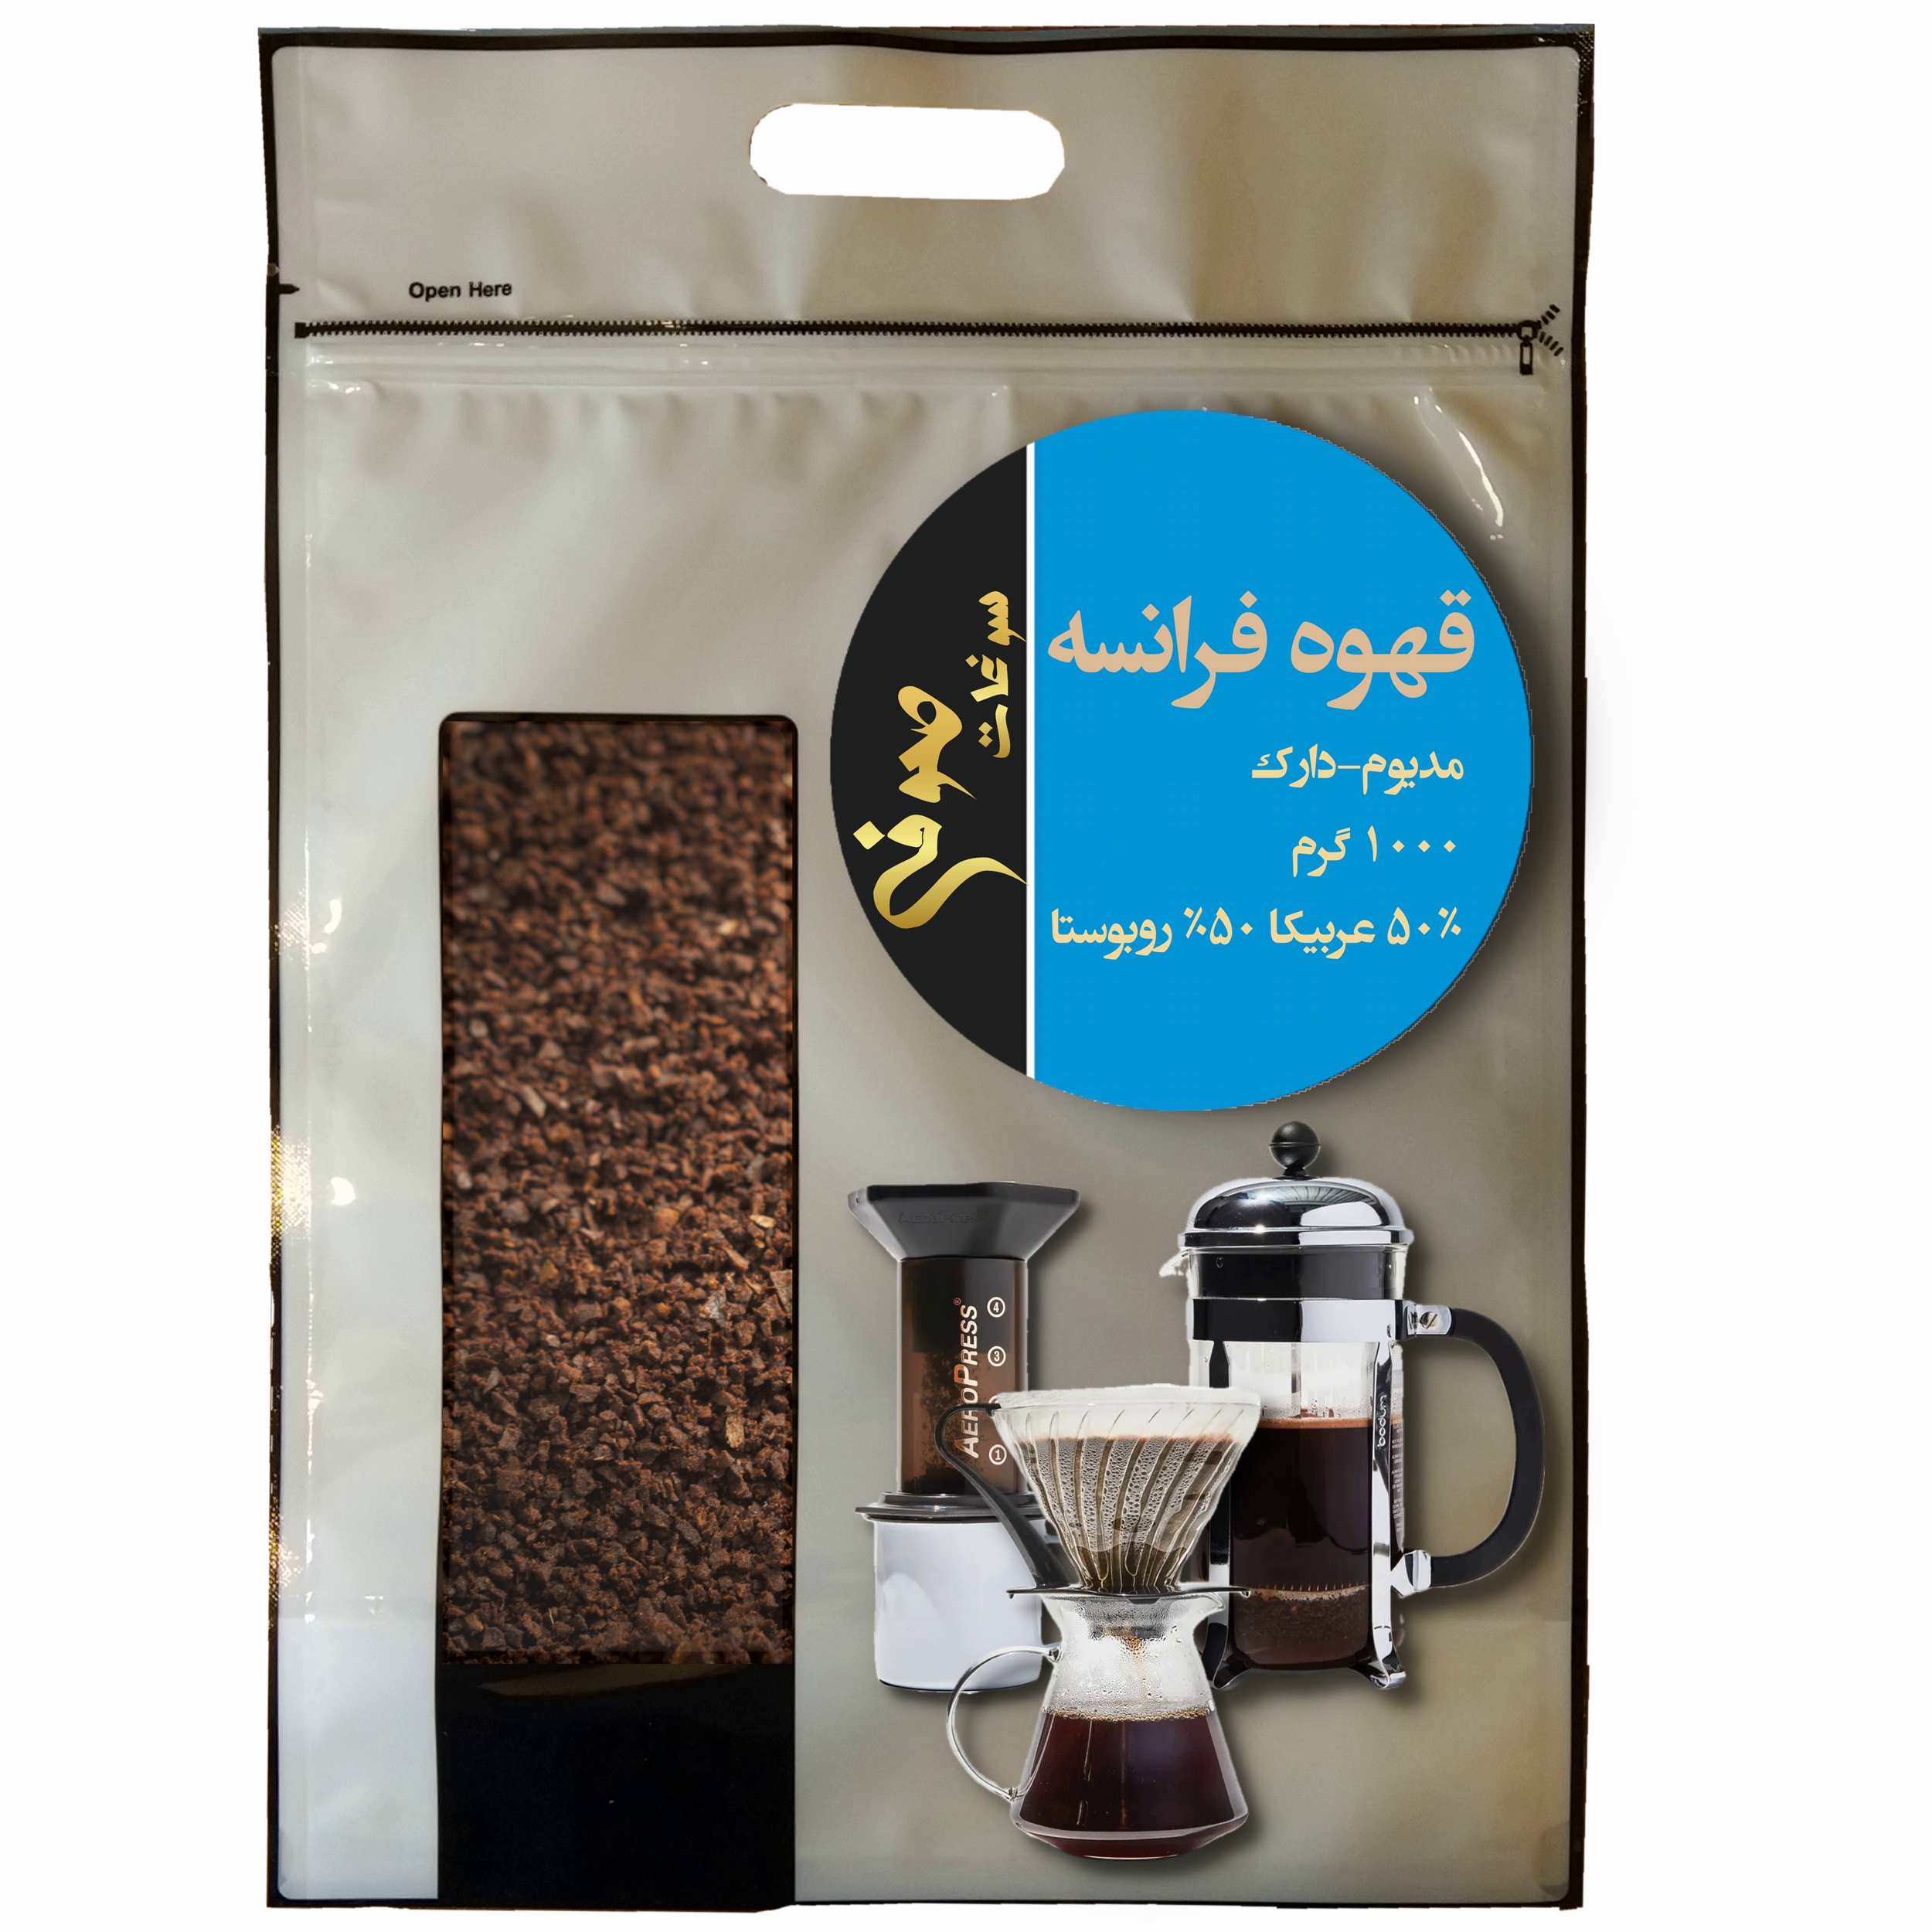 پودر قهوه فرانسه مدیوم دارک 50% عربیکا 50% روبوستا صوفی - 1 کیلوگرم